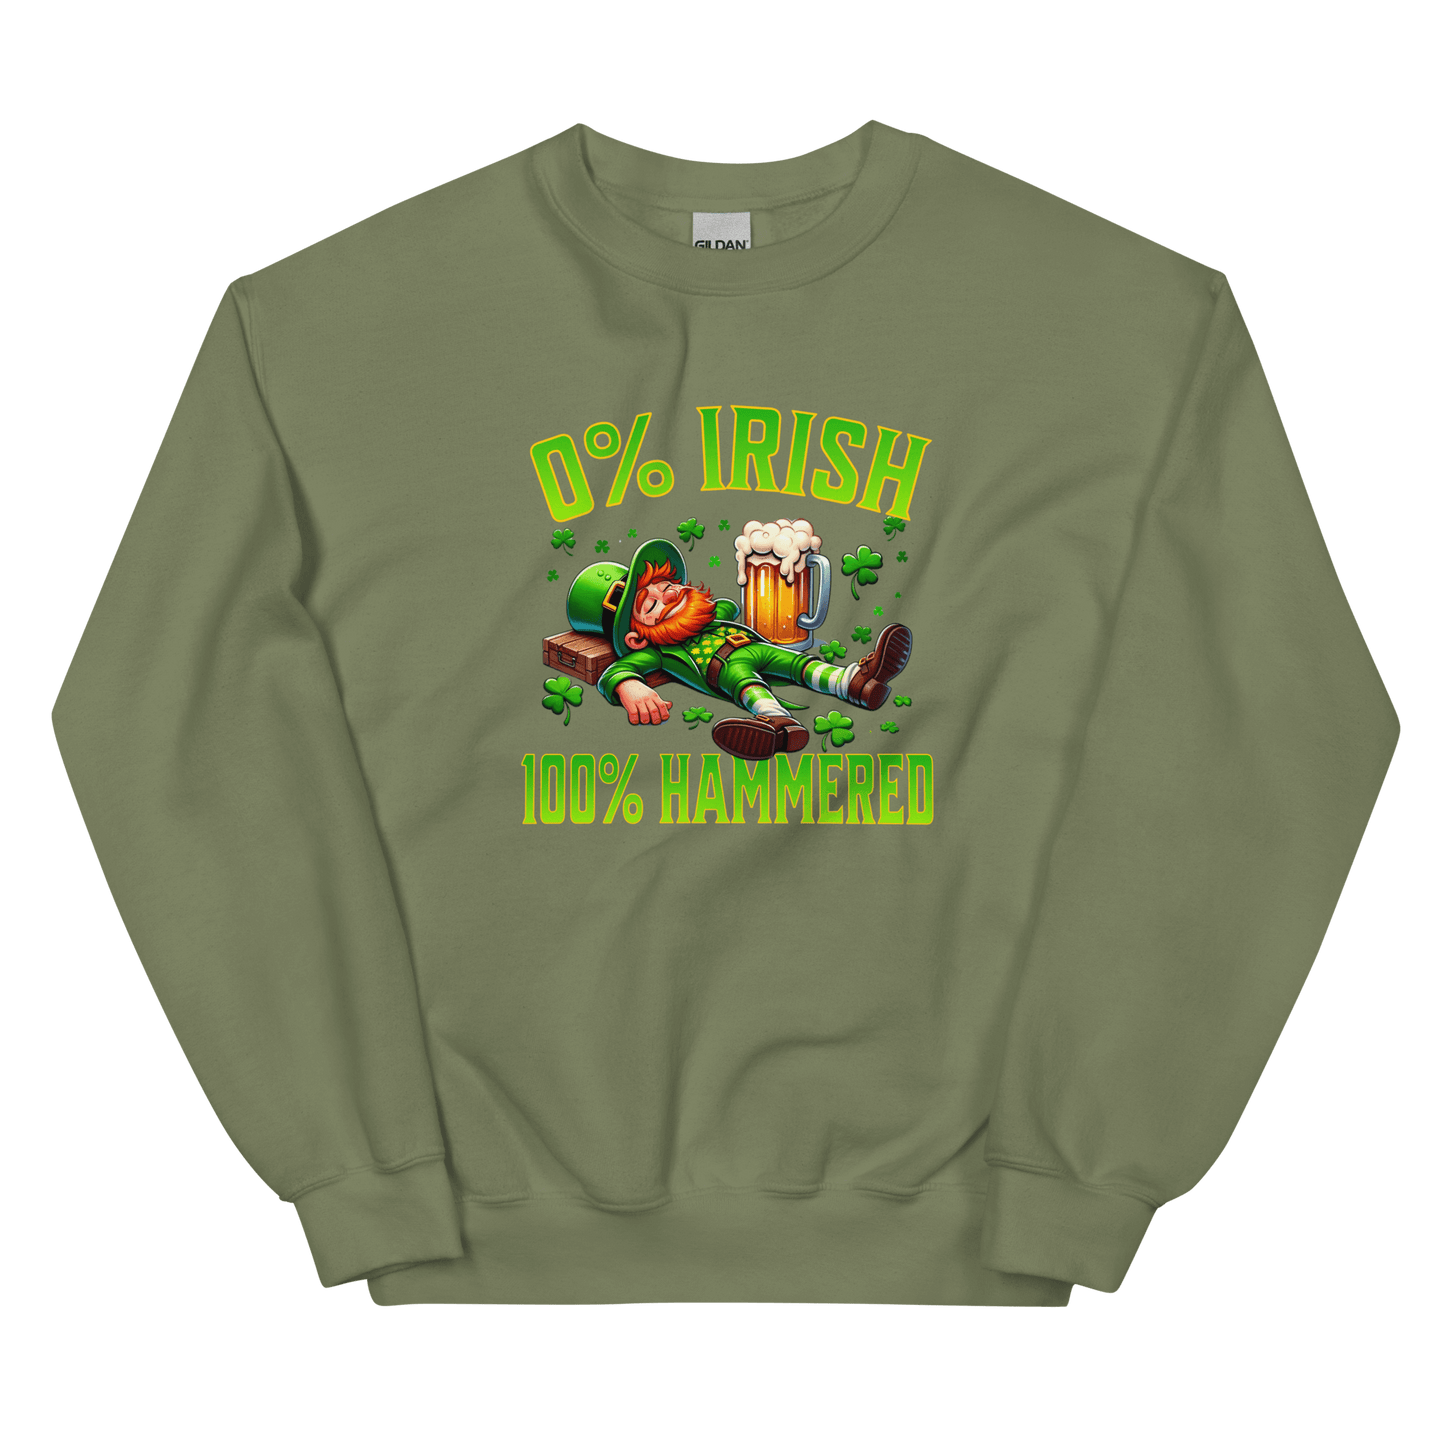 0% Irish 100% Hammered Sweatshirt